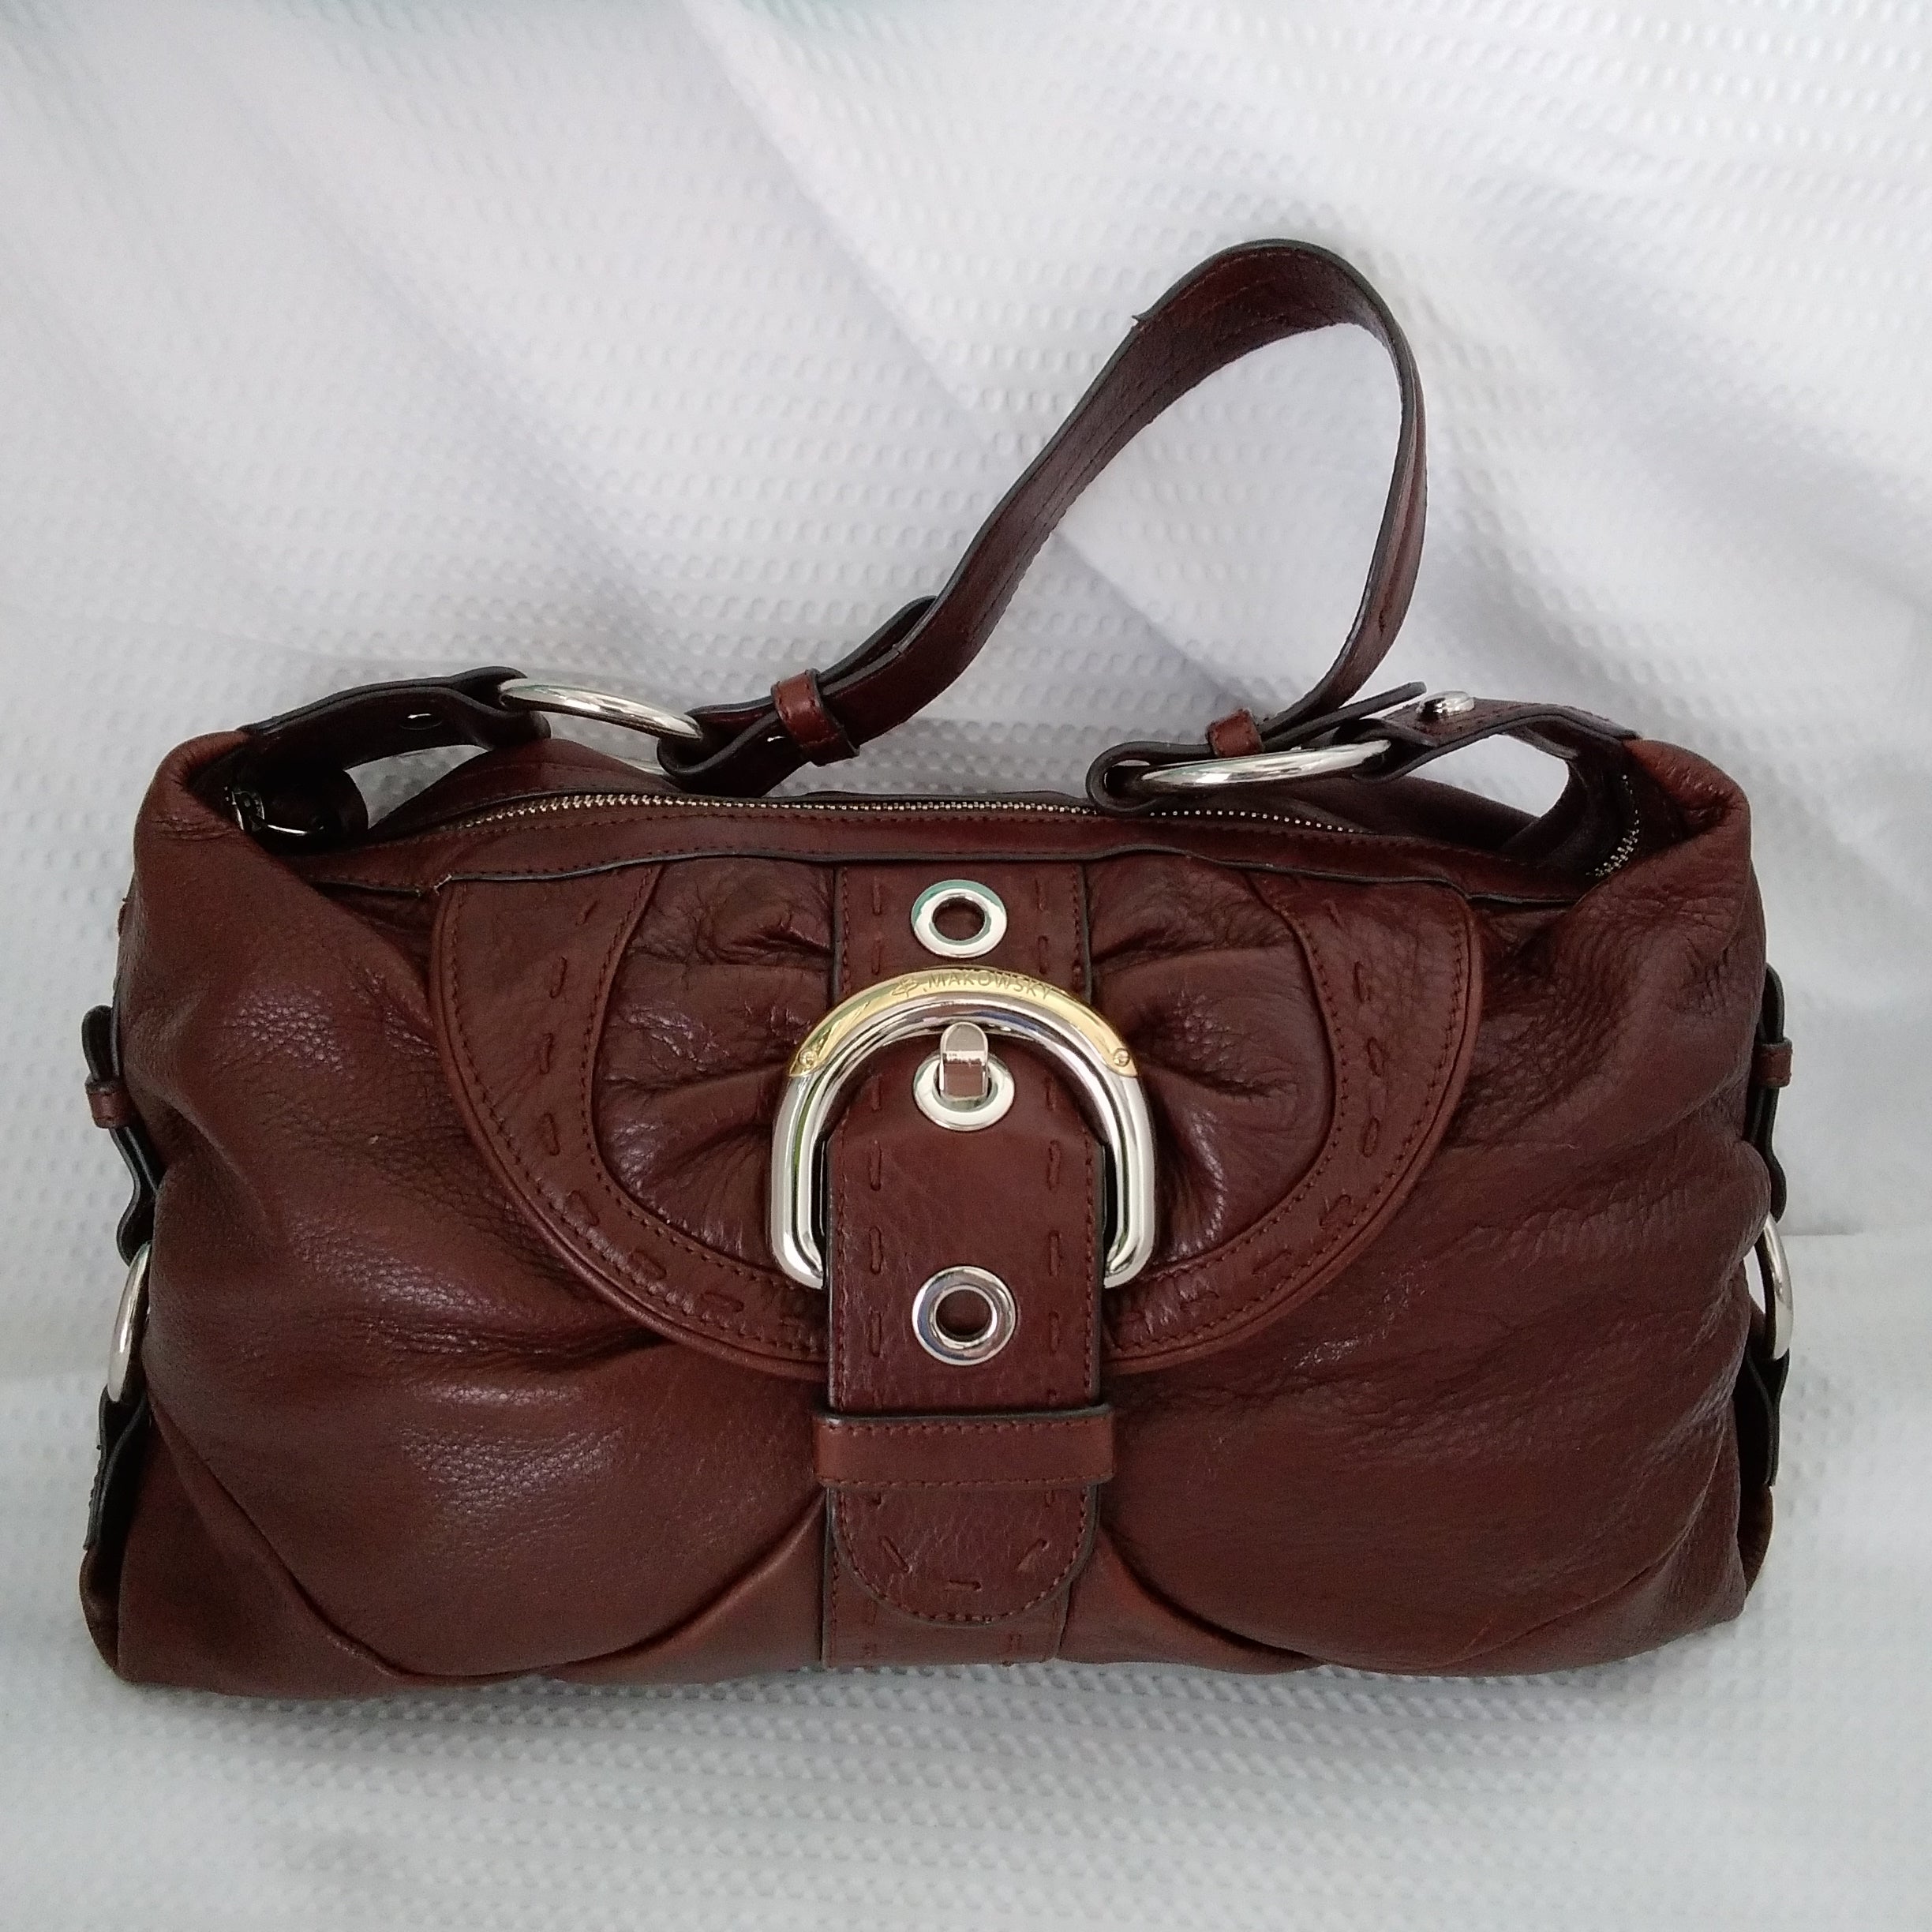 Bruce makowsky handbag purse - Gem